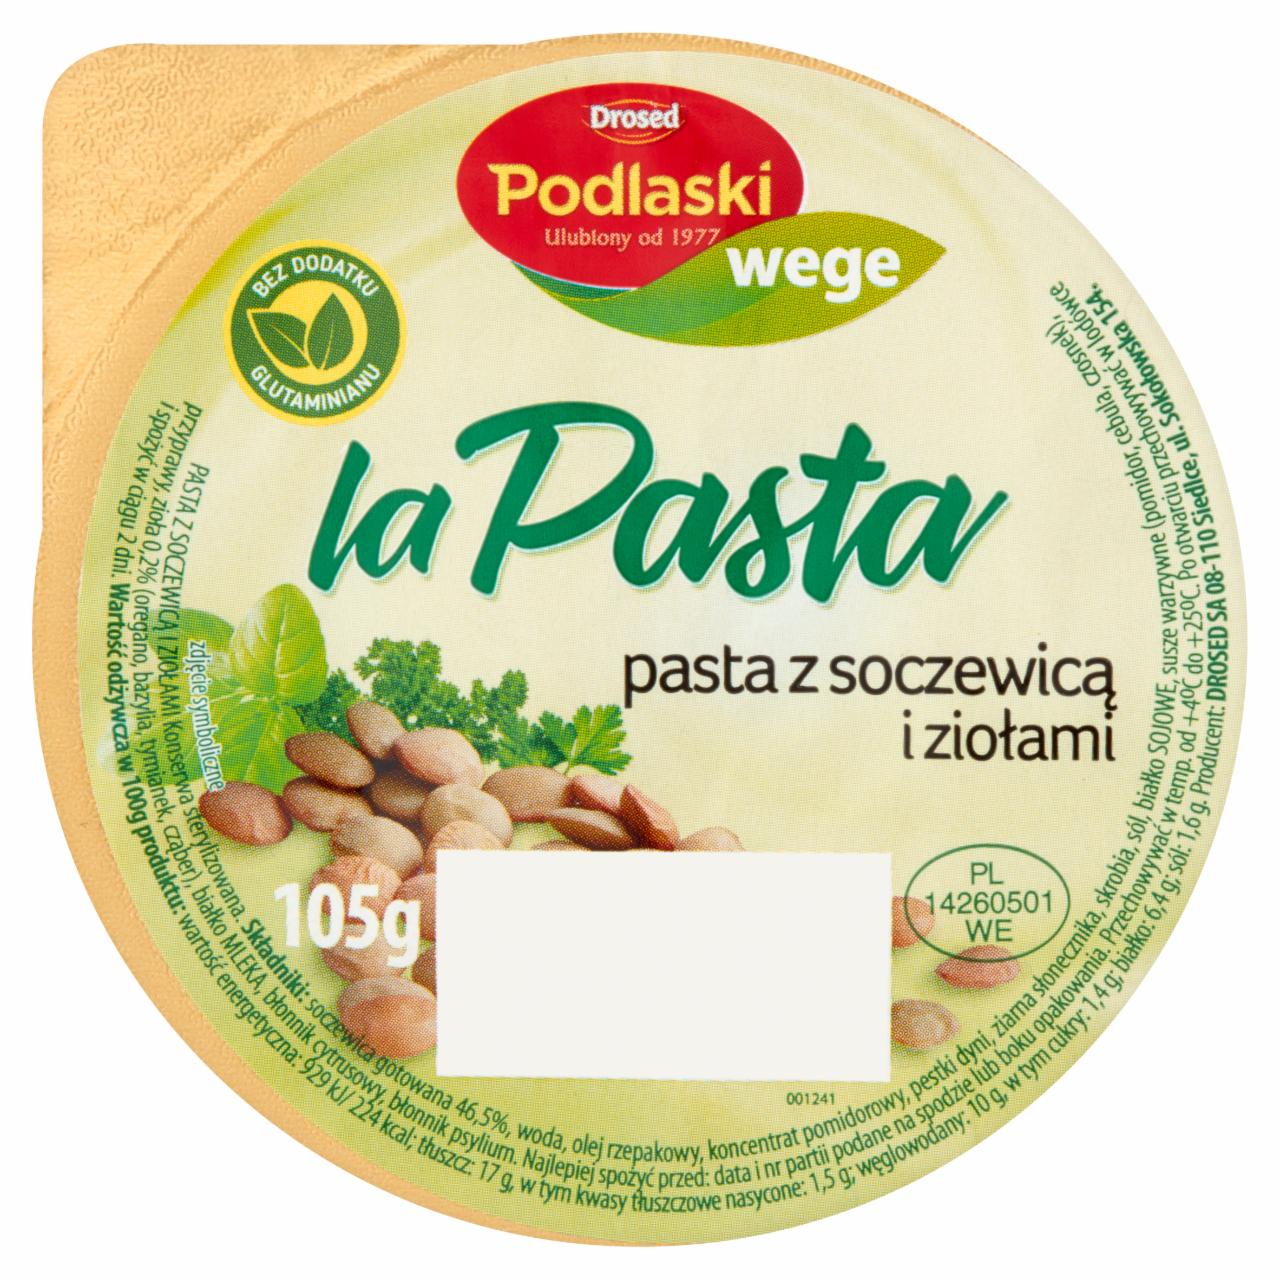 Zdjęcia - Drosed Podlaski wege la Pasta Pasta z soczewicą i ziołami 105 g